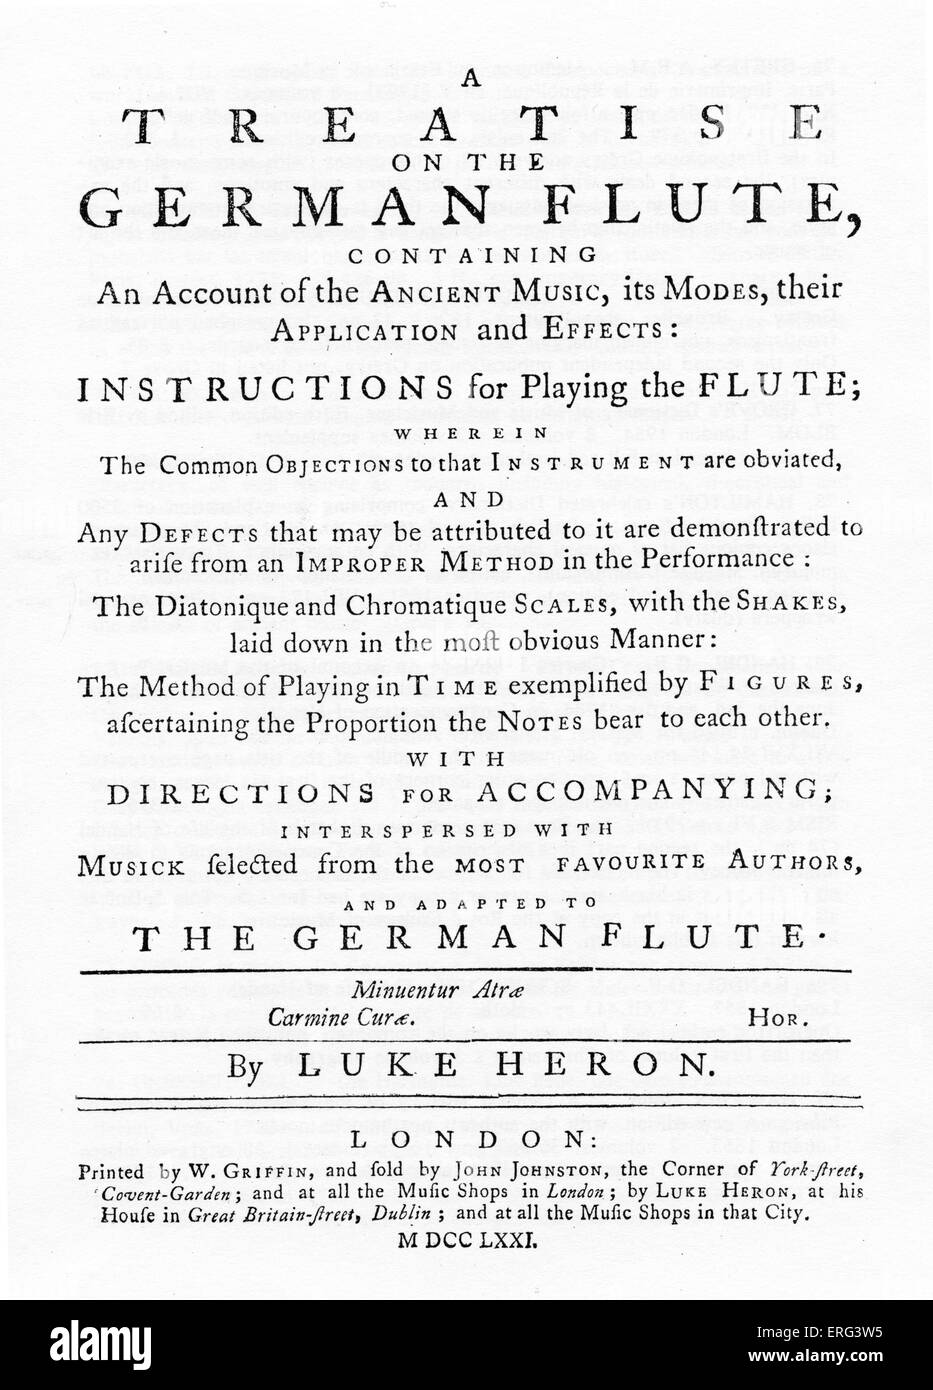 "Eine Abhandlung über die Deutsch-Querflöte" von Luke Heron, 1771, London, gedruckt von w Griffin. Frontispiz. Stockfoto